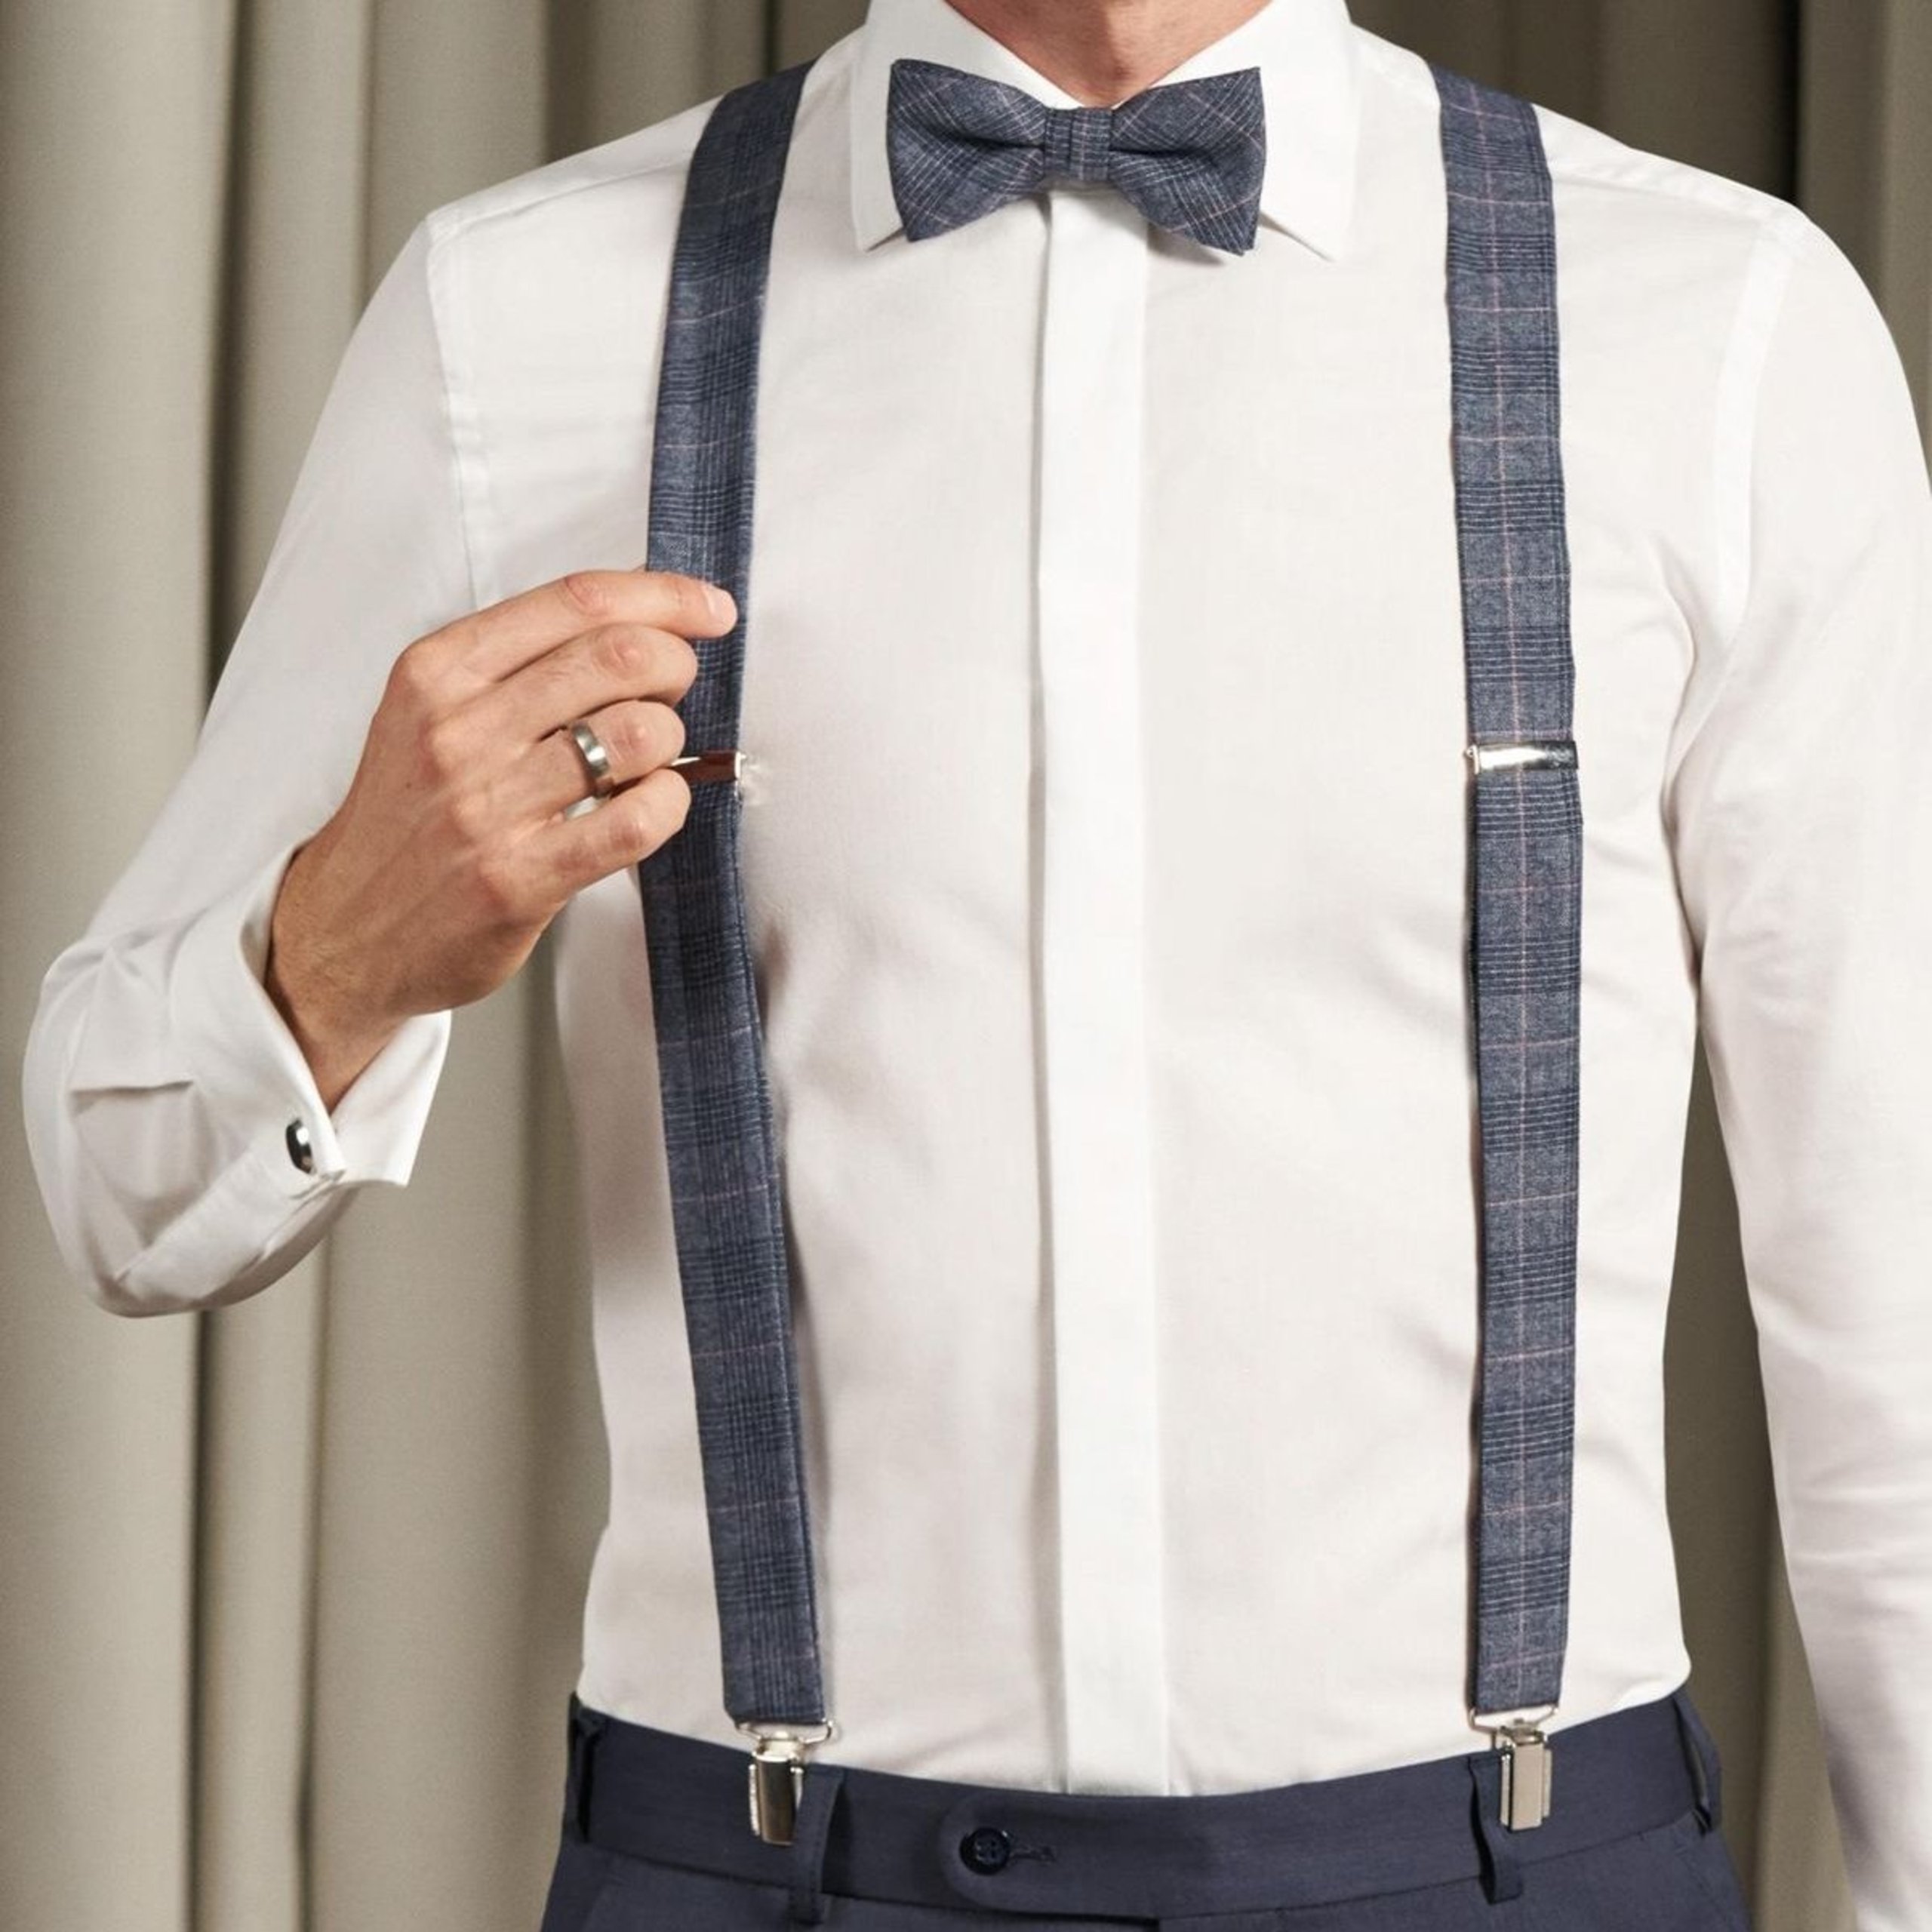 Accessoires passend abgestimmt zum Hochzeitsanzug oder Smoking: Schleife, Plastron oder Krawatte